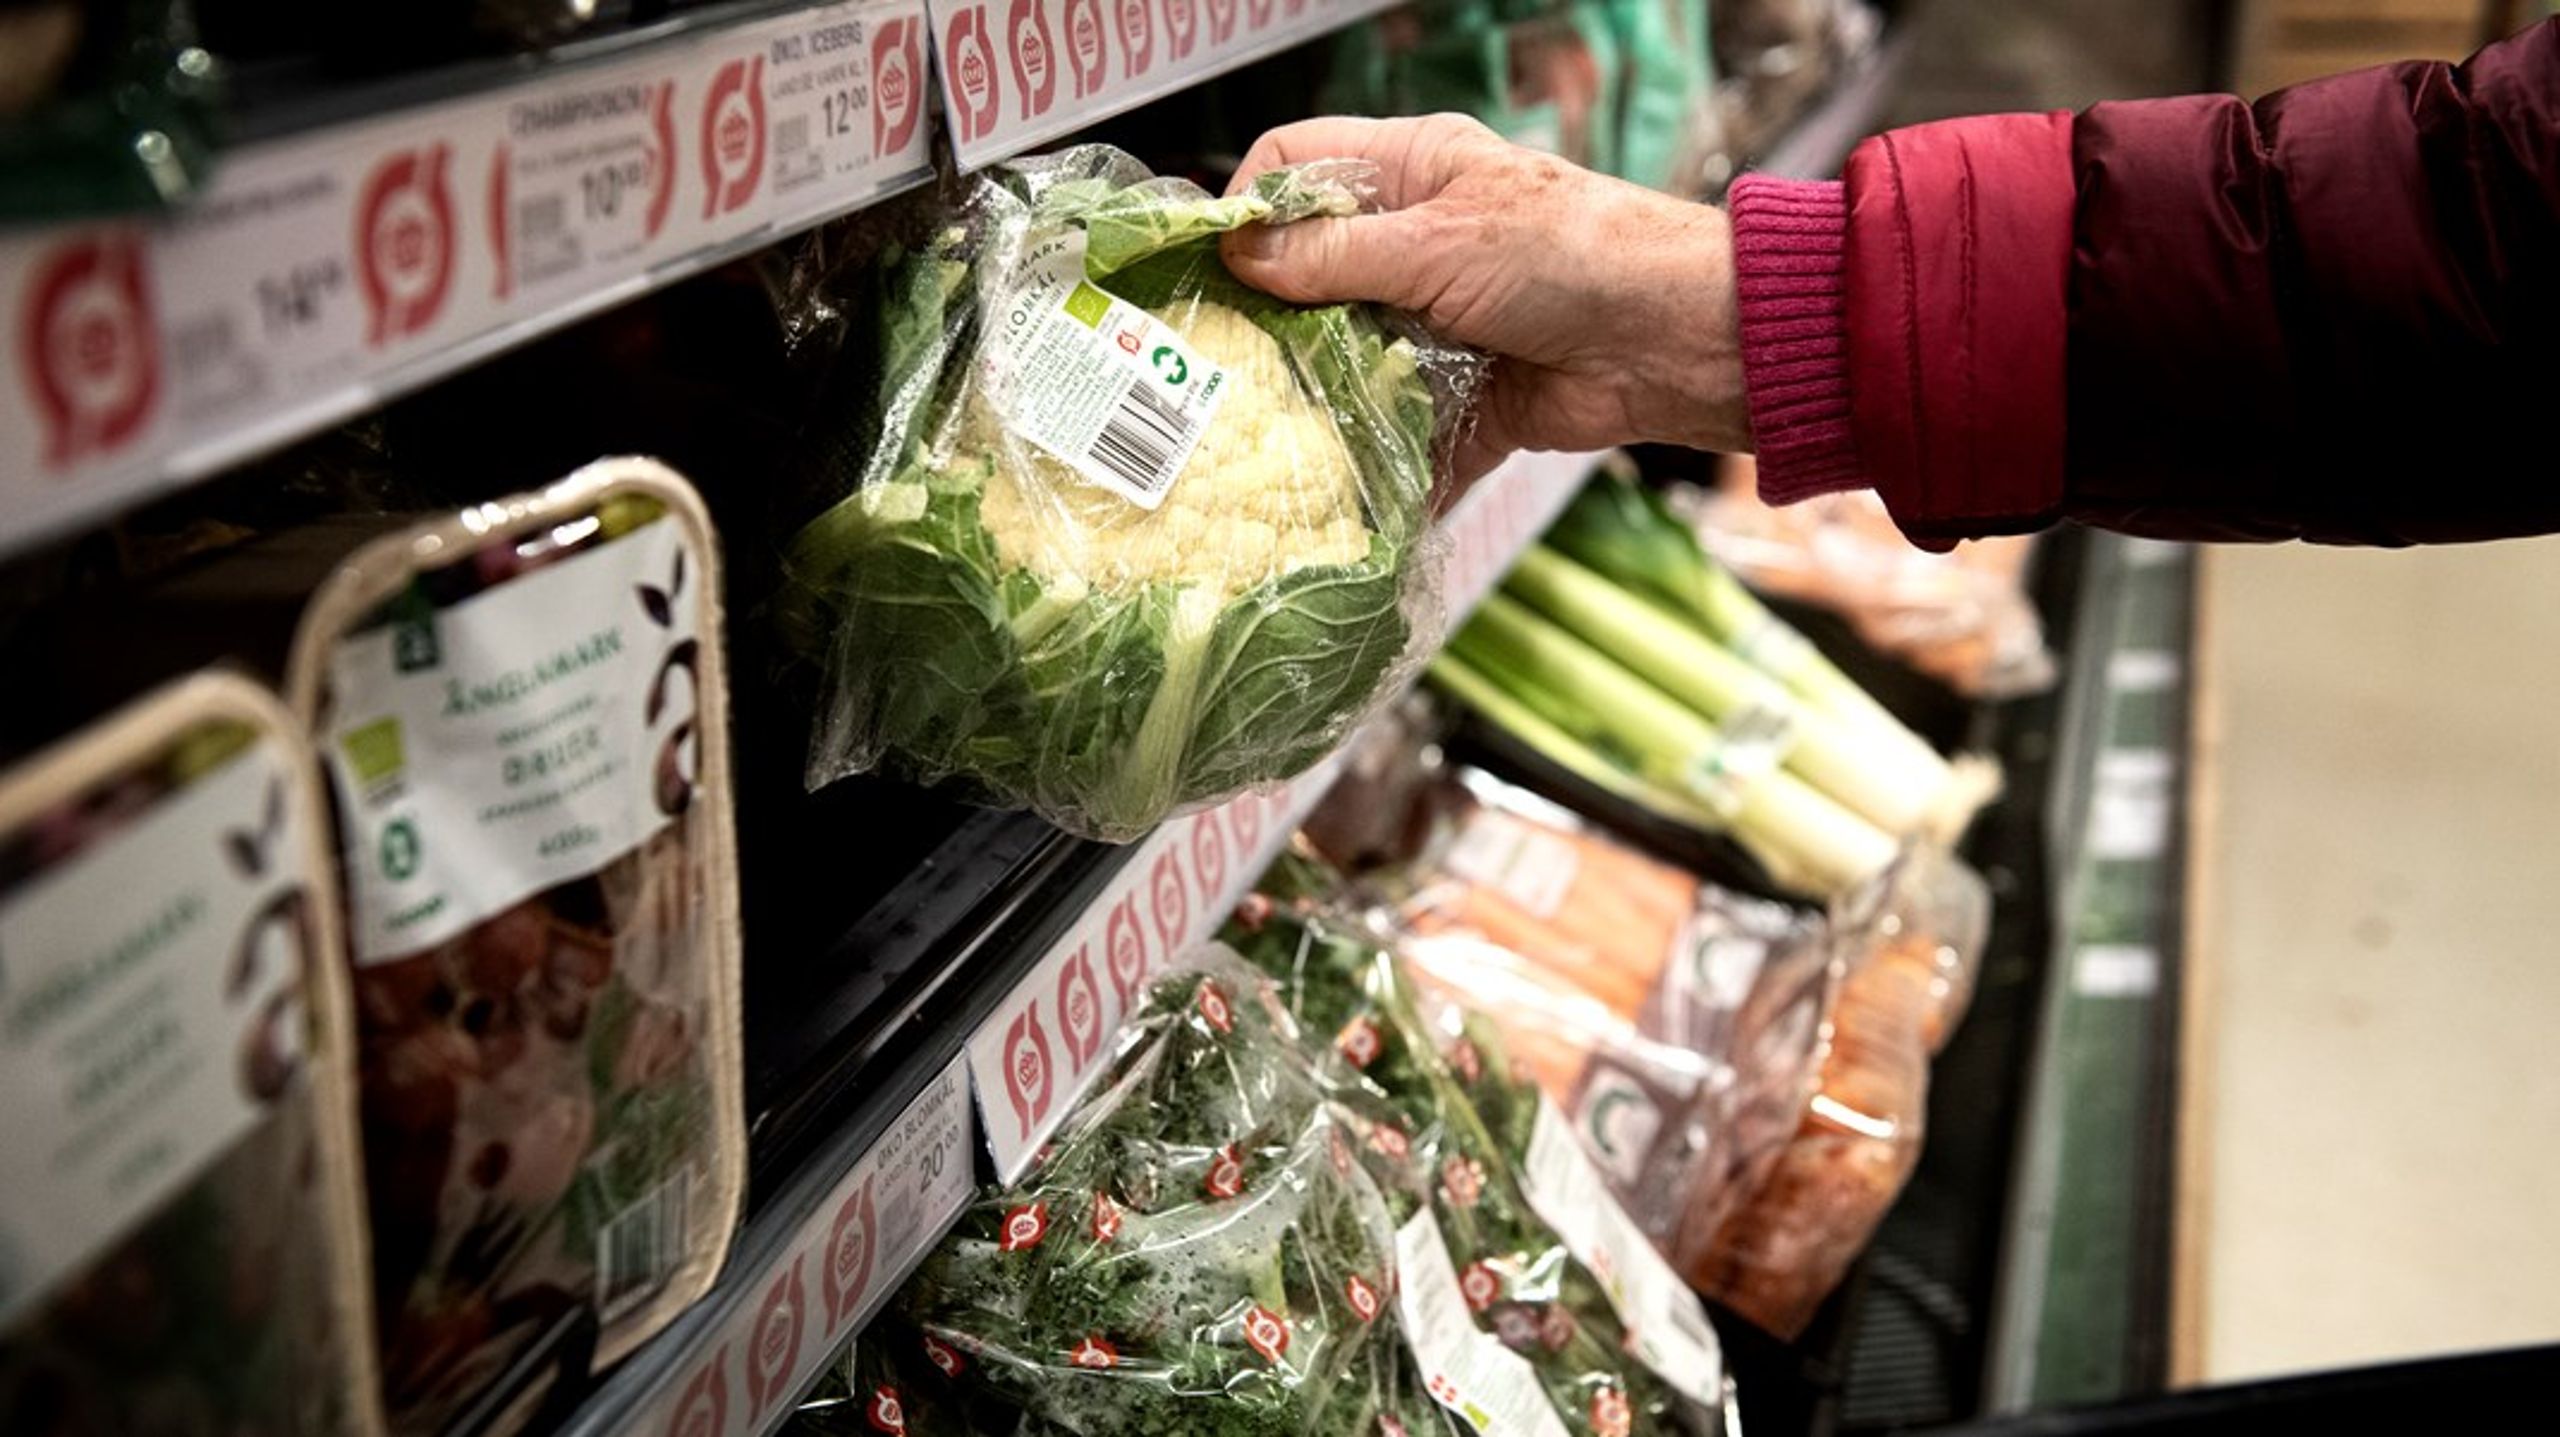 Fremover bør man også kunne finde et klimamærke på madvarerne i butikkerne på linje med&nbsp;Ø-mærket, fuldkornsmærket og nøglehulsmærket, skriver Leif Nielsen.